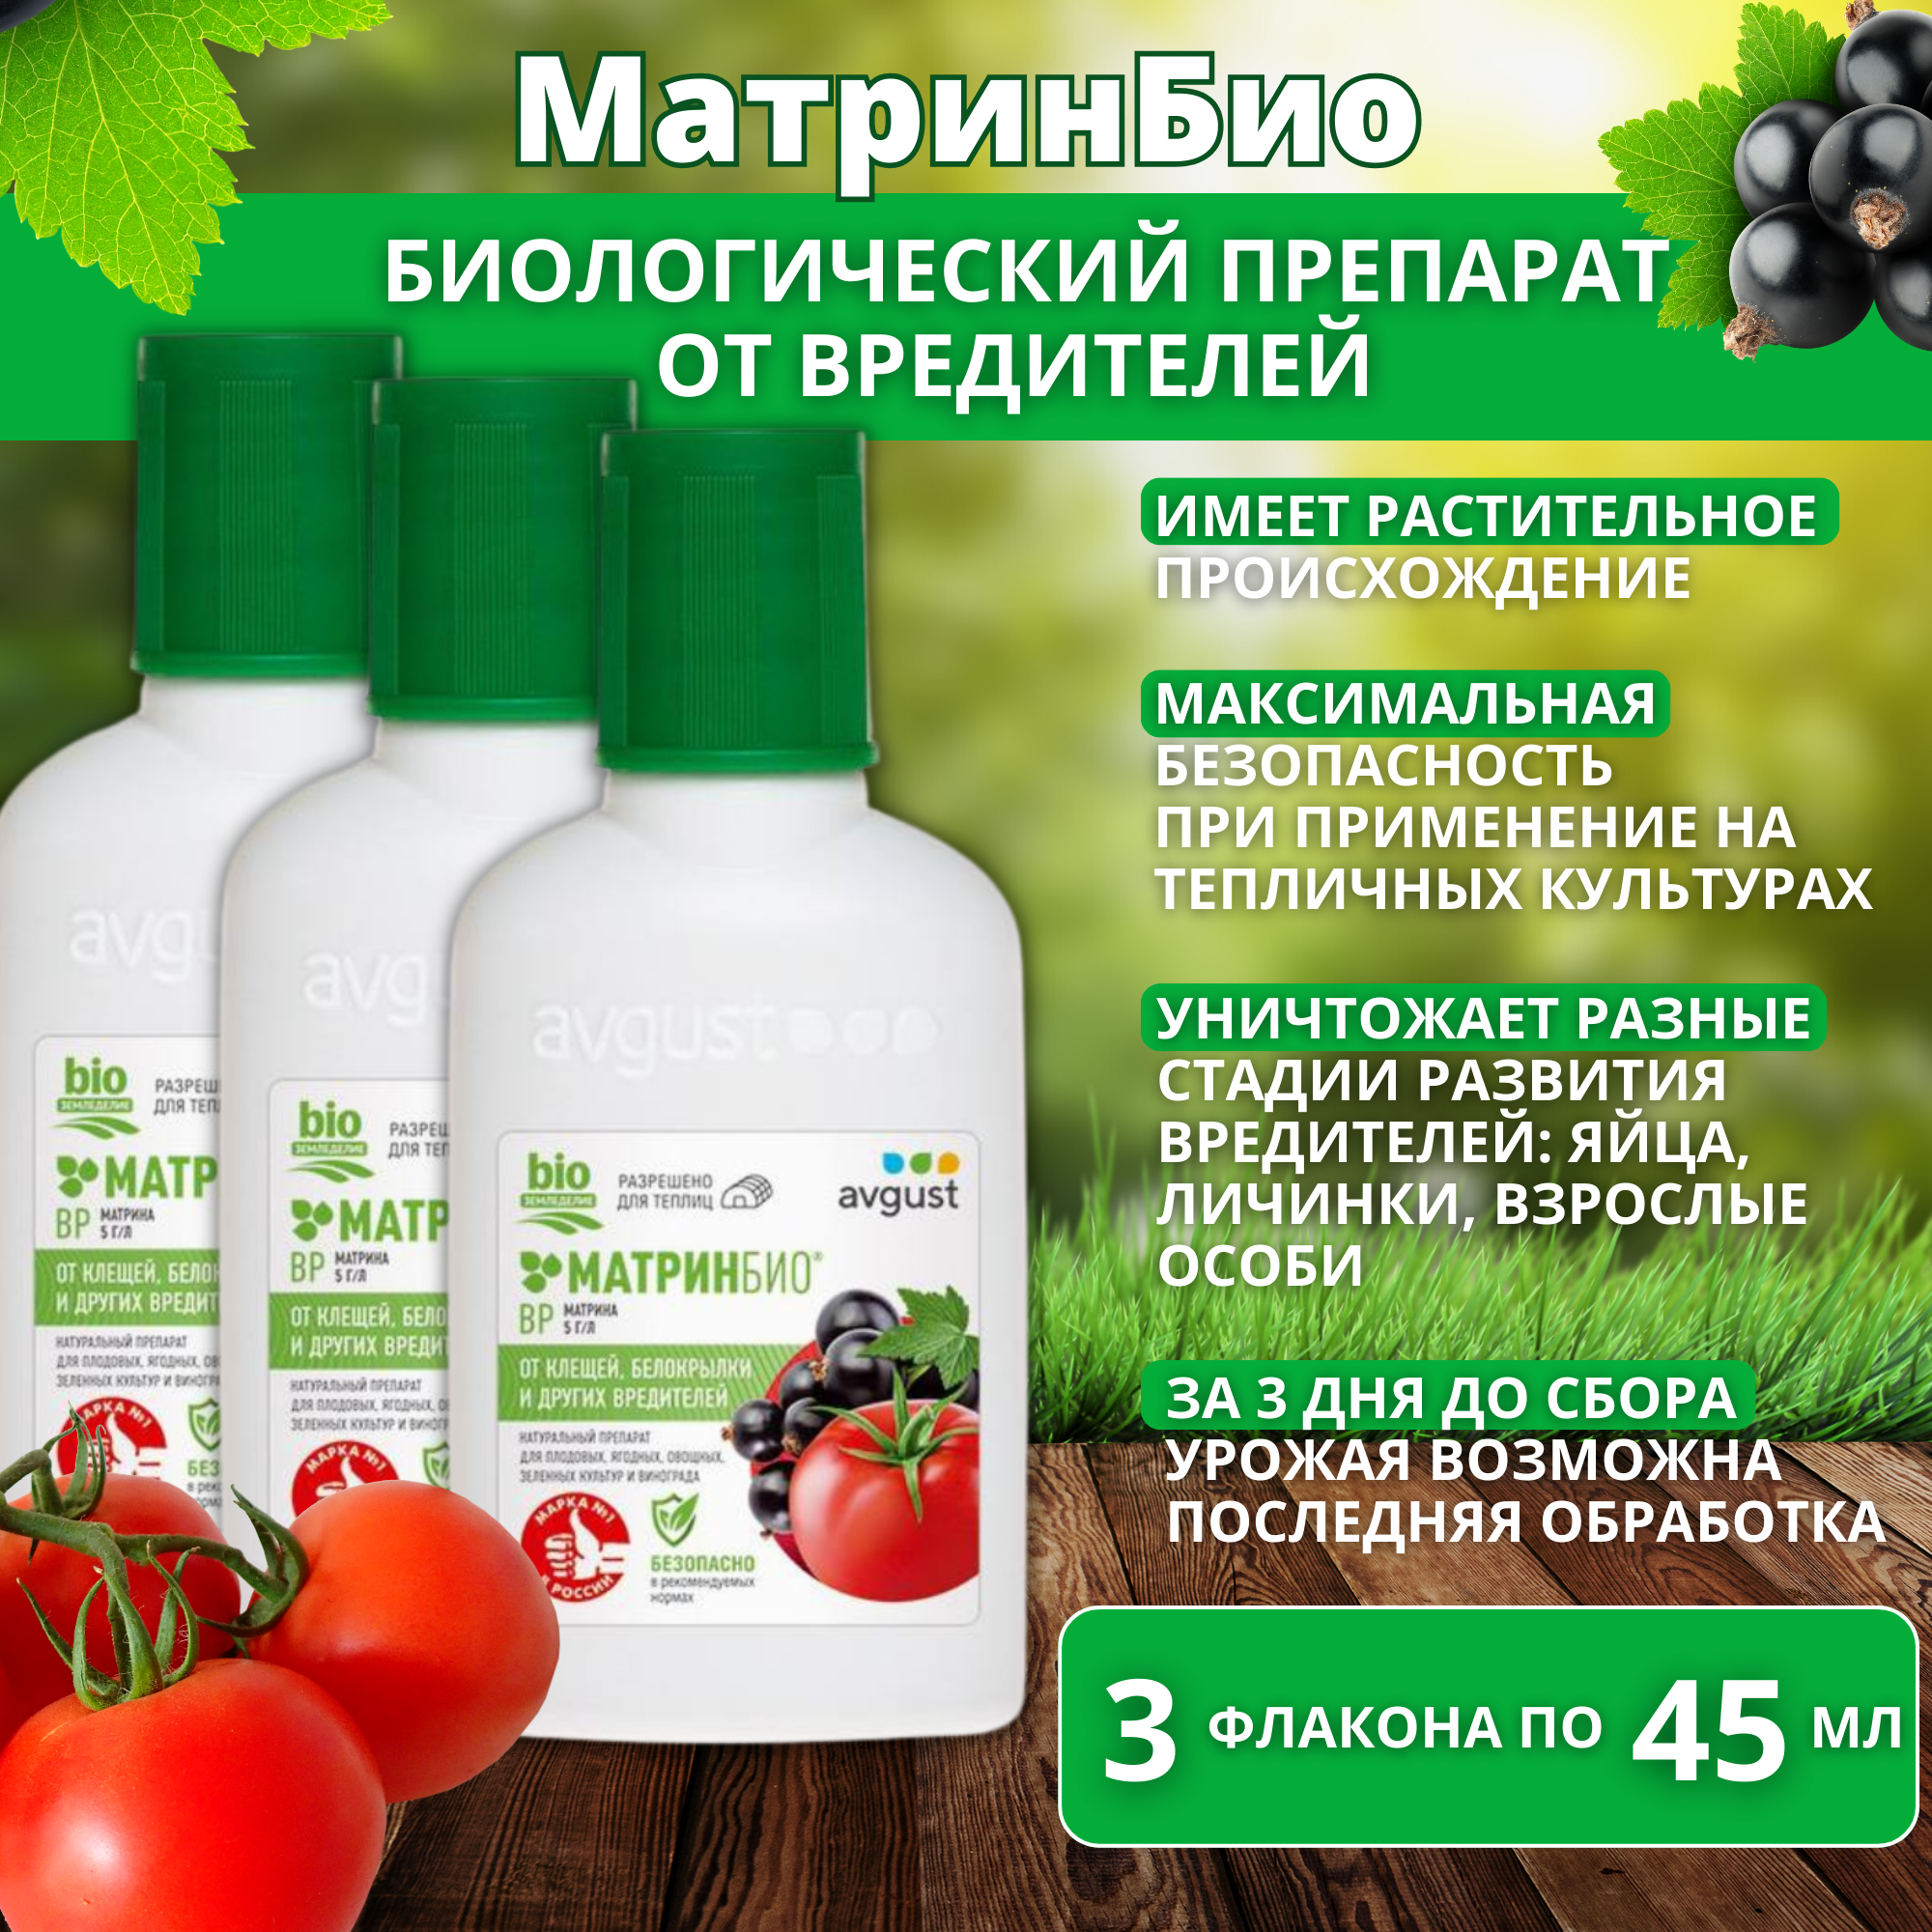 МатринБио для защиты овощных плодовых культур и винограда от вредителей 3 флакона по 45 мл